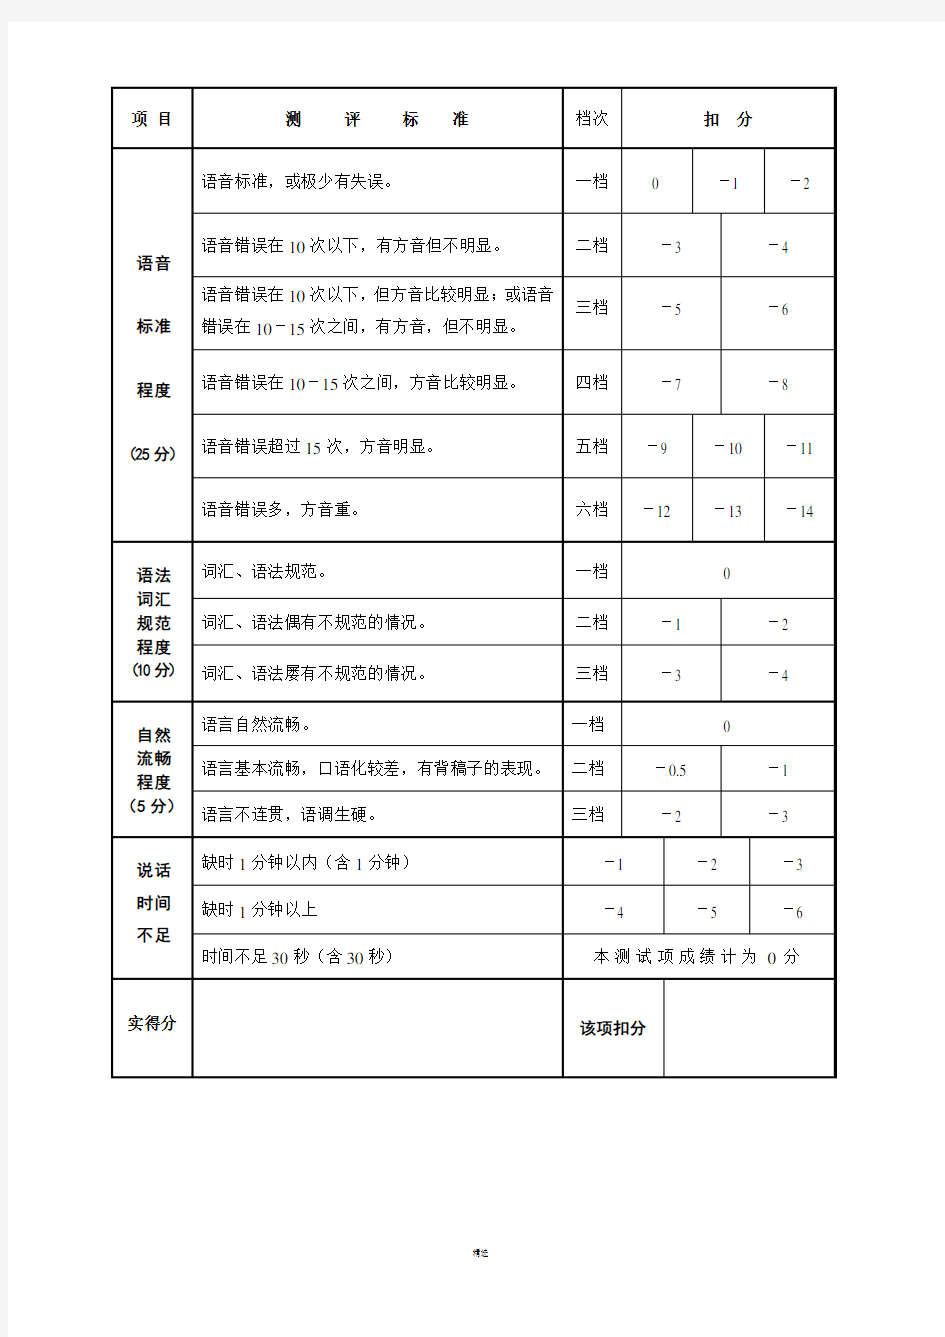 普通话水平测试评分表